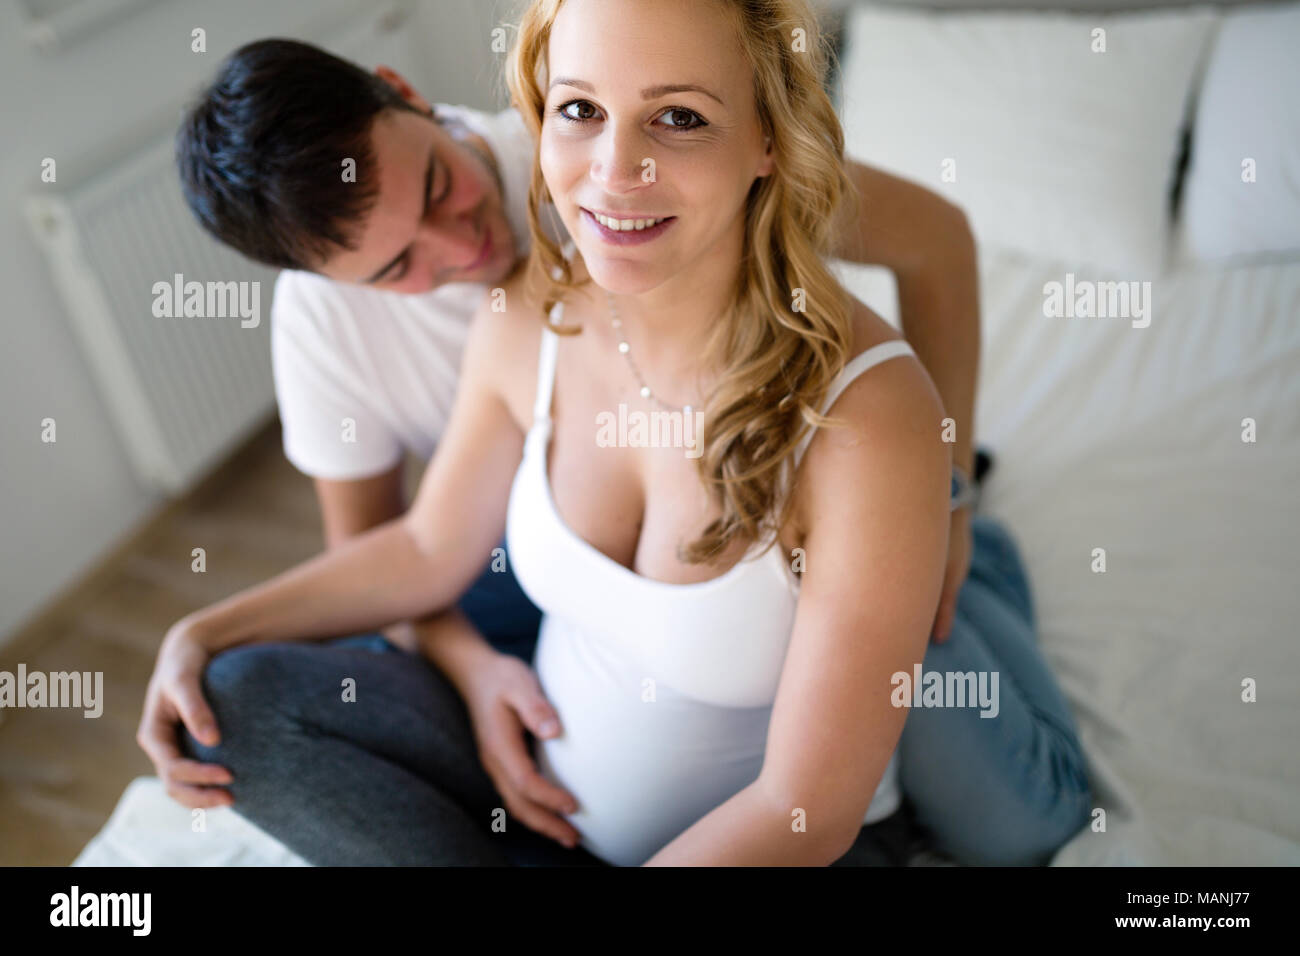 Gerne schwangere Frau sich mit ihrem Mann Stockfoto